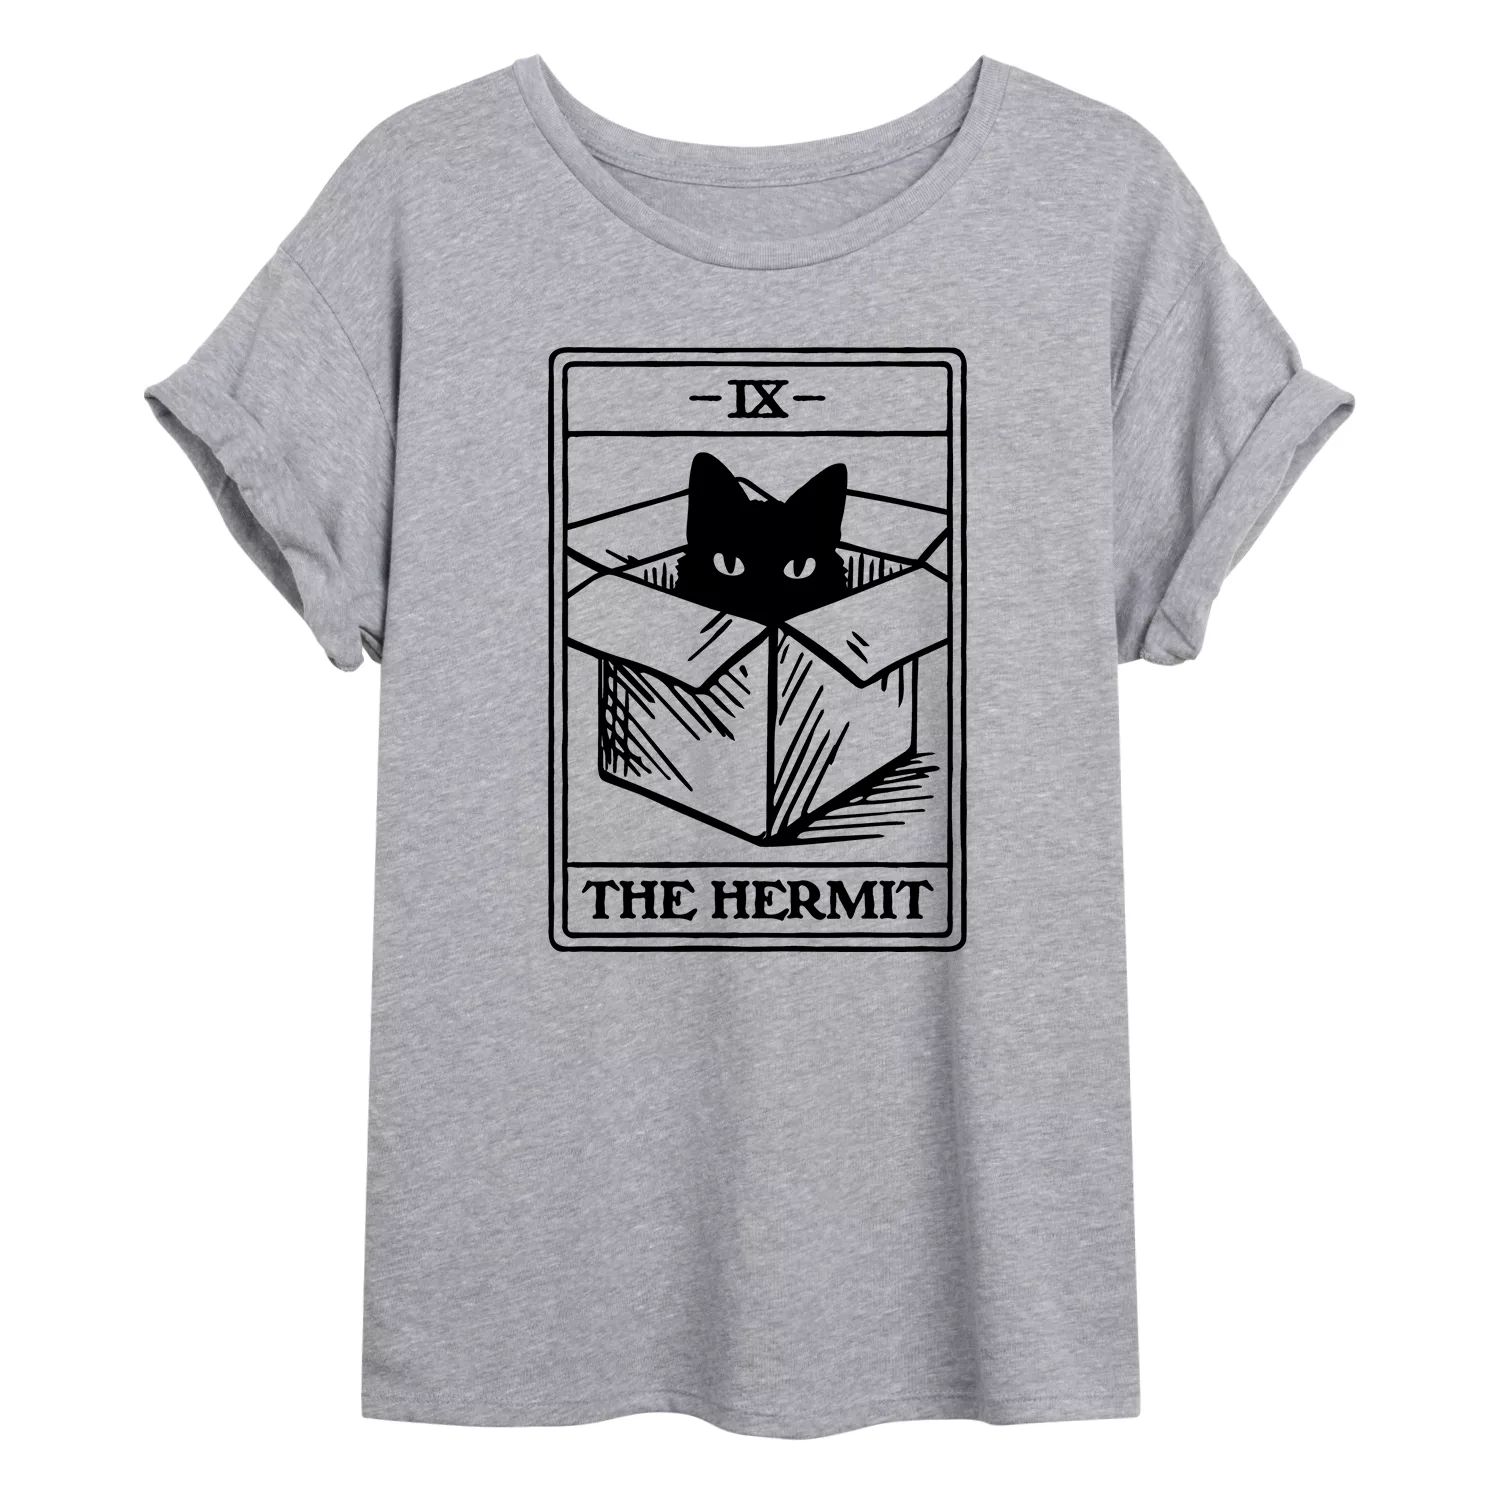 

Детская футболка большого размера с изображением карты Таро The Hermit Cat Tarot Licensed Character